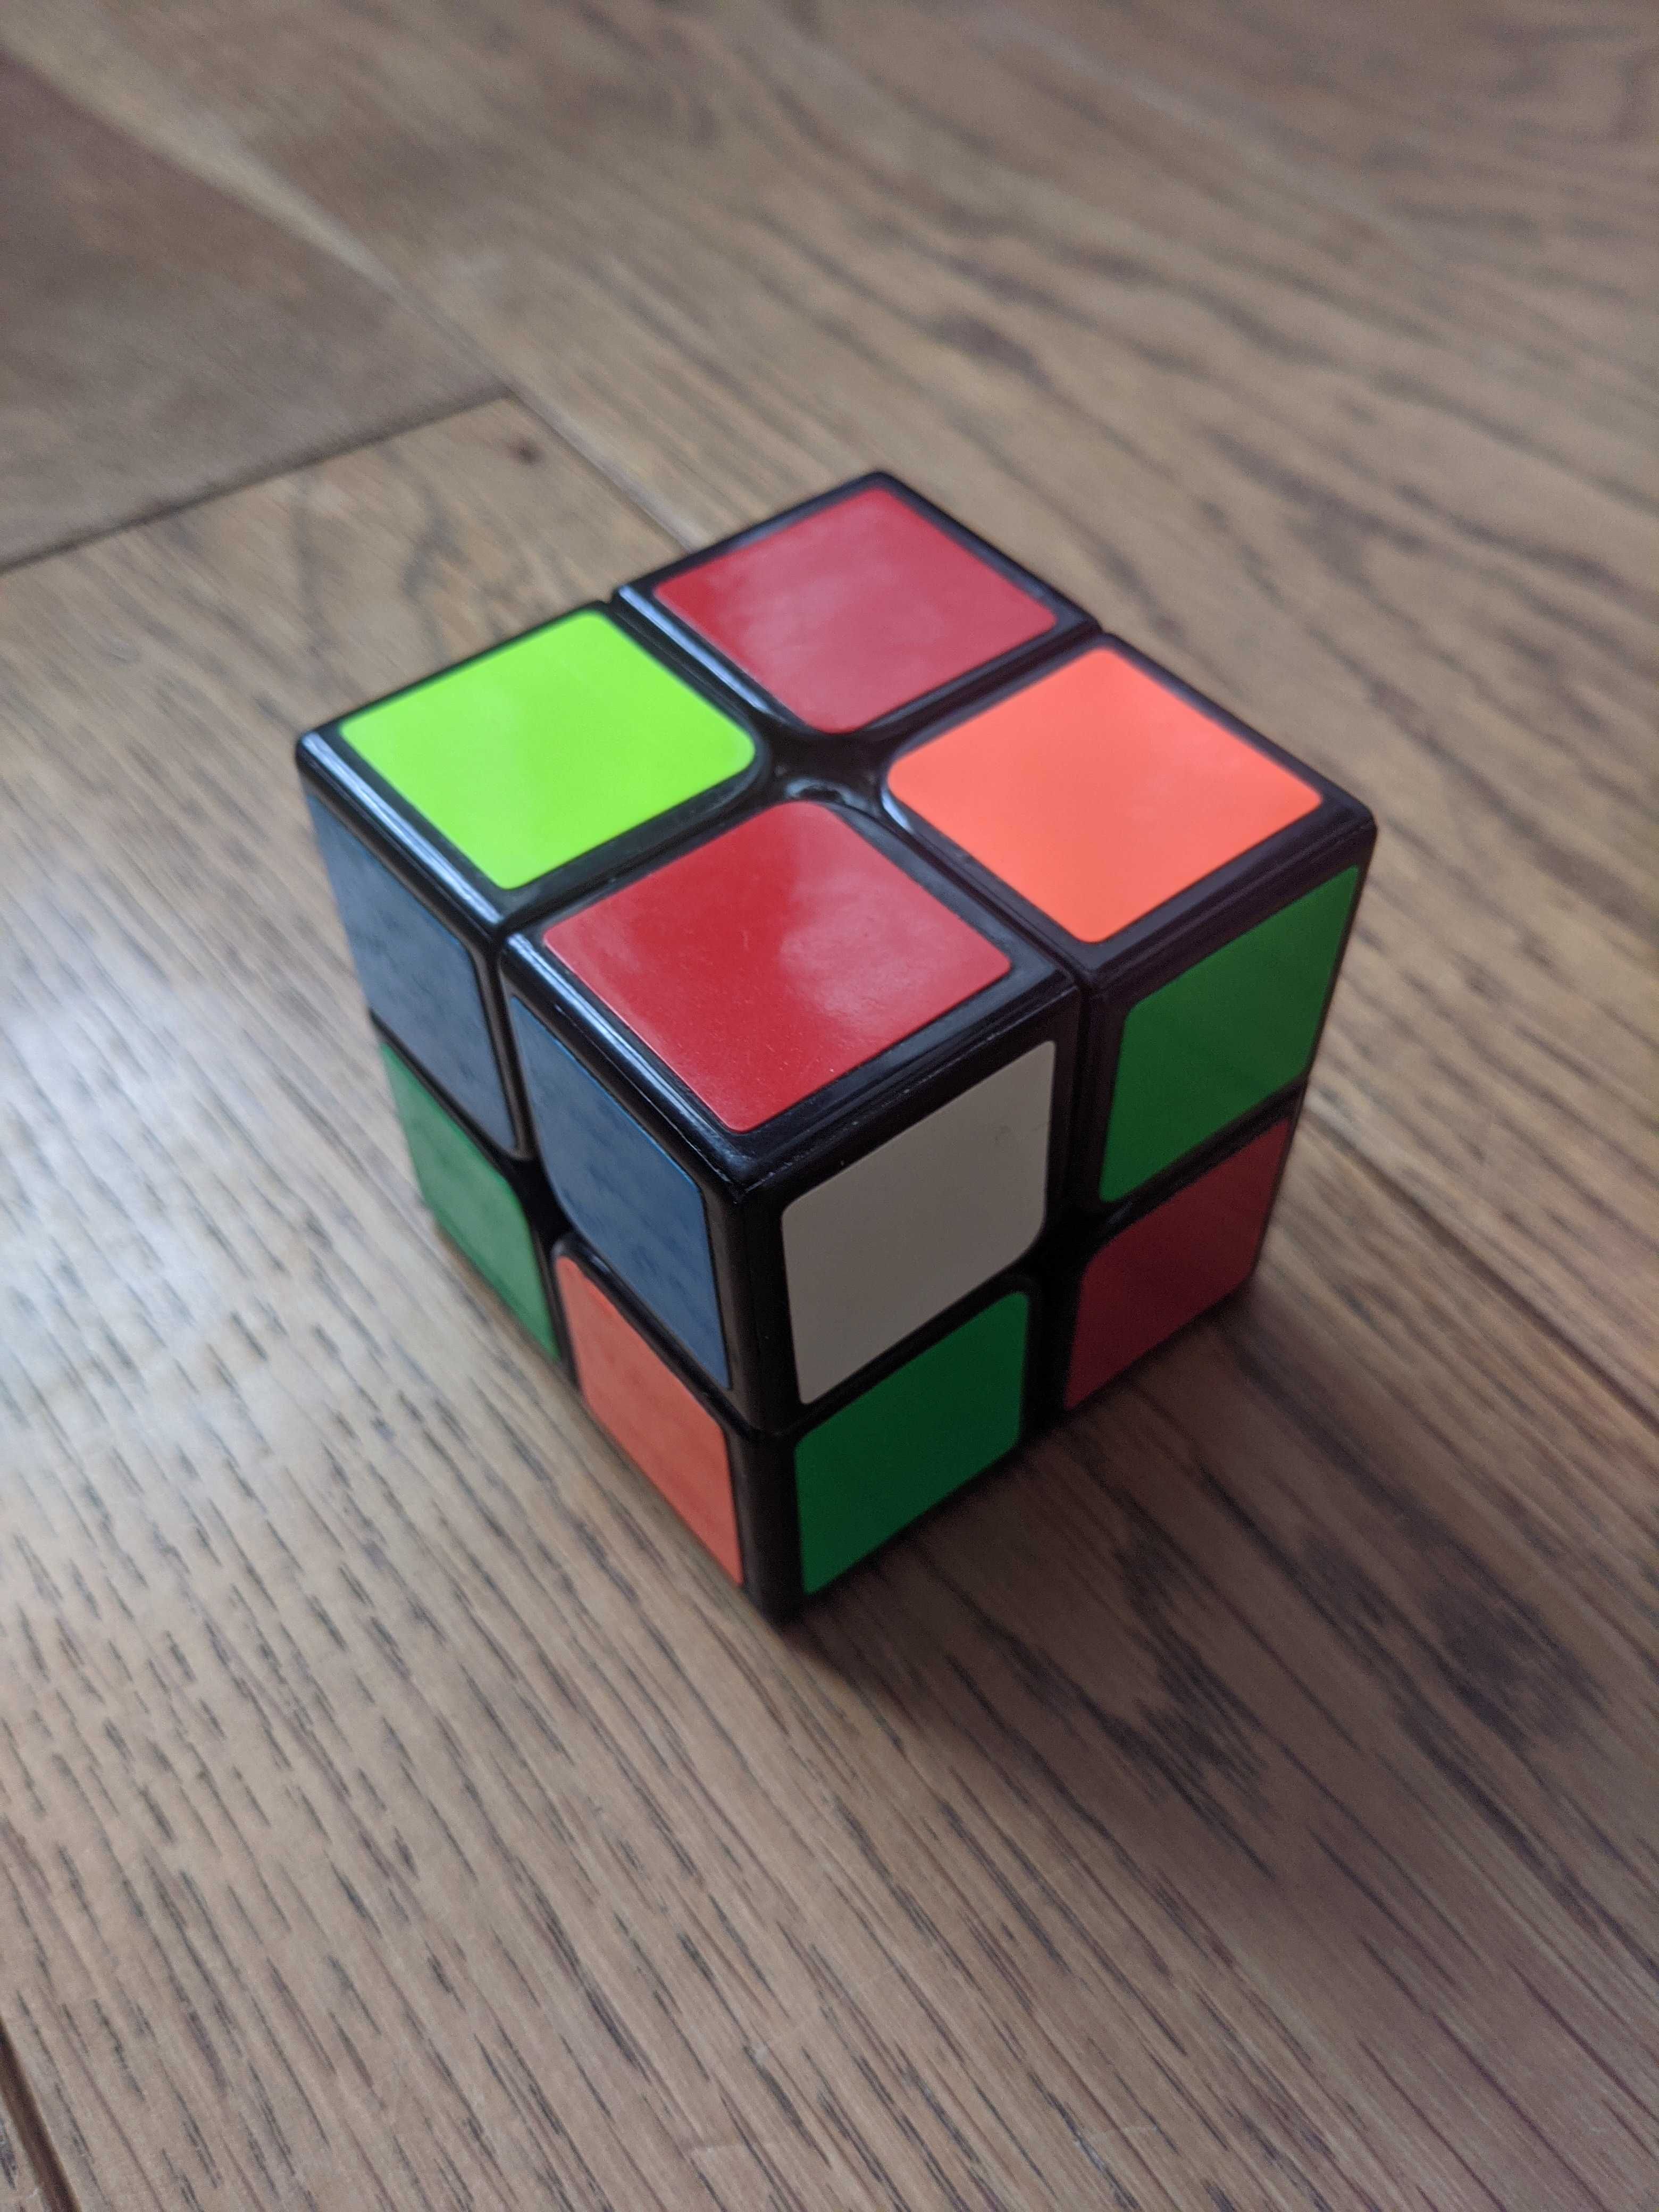 Kostka Rubika MoYu LingPo 2x2x2